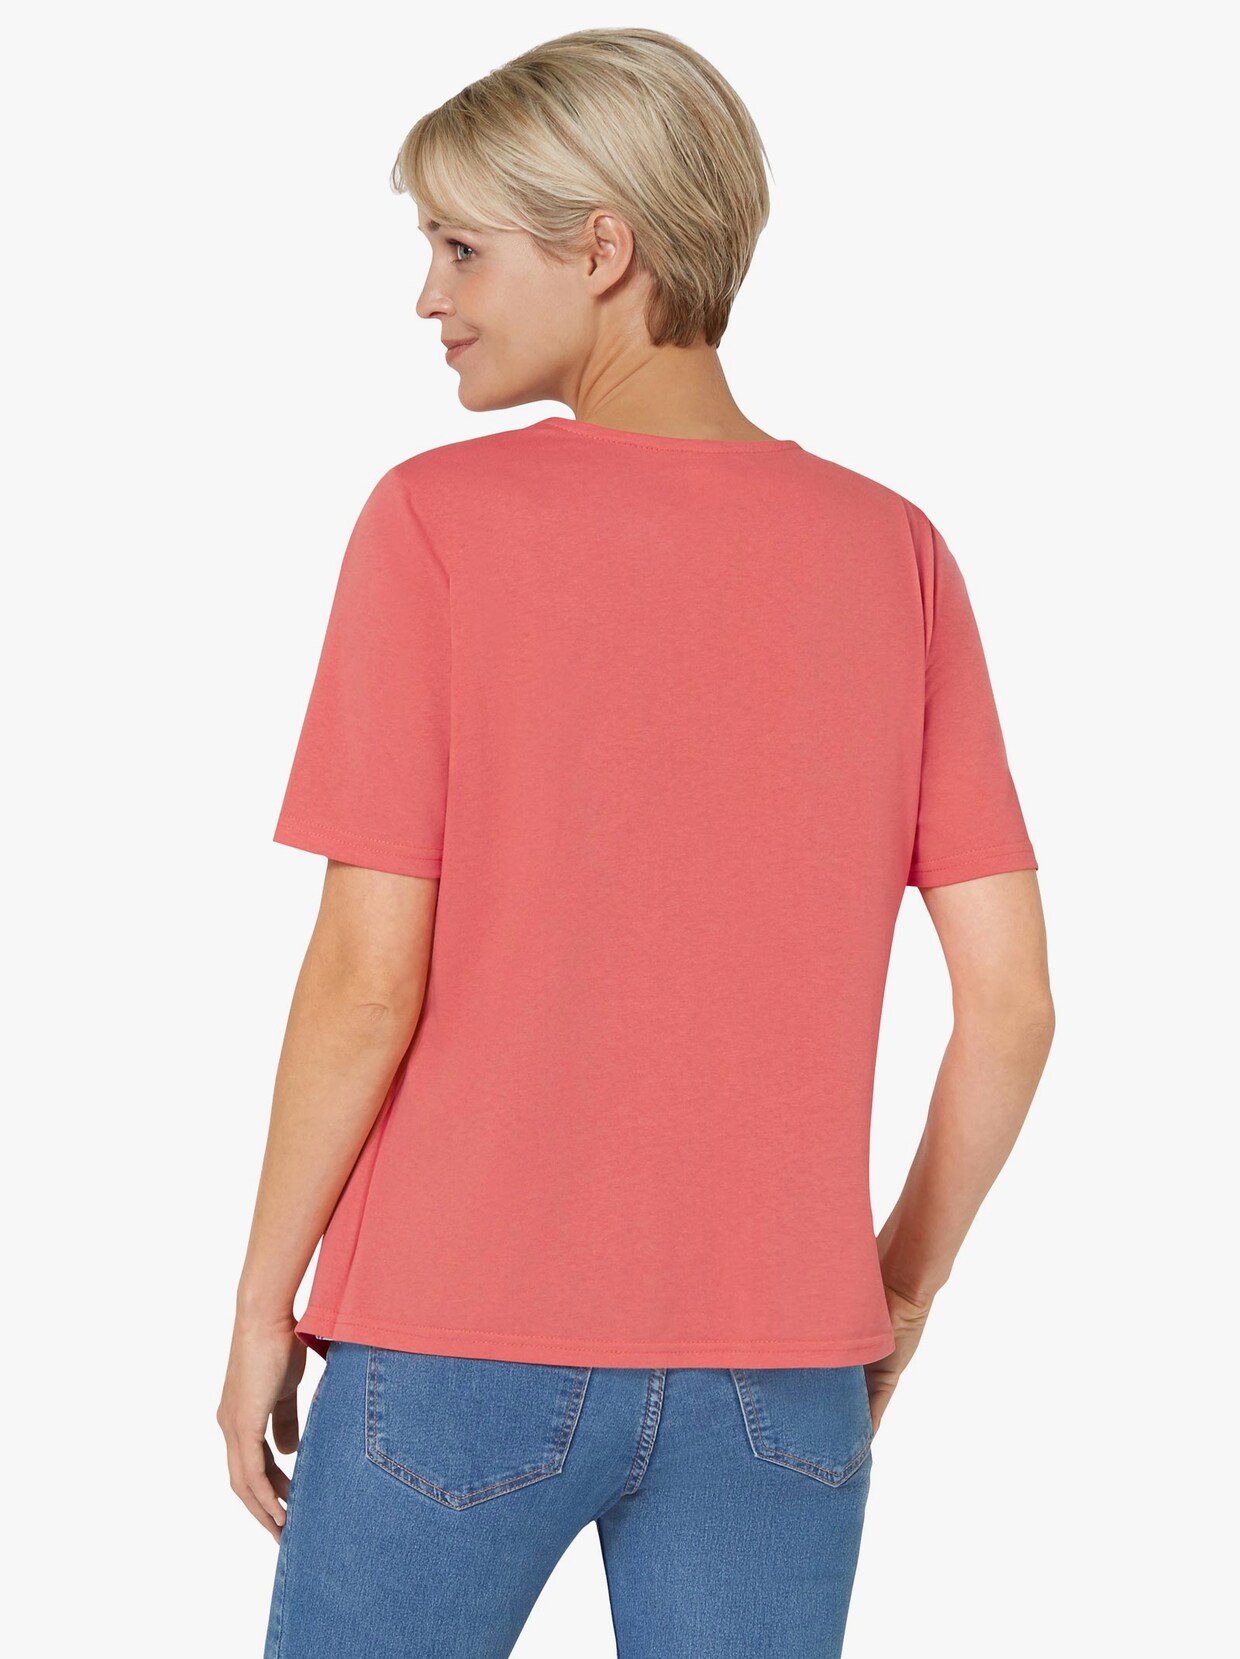 2-in-1-shirt - grapefruit